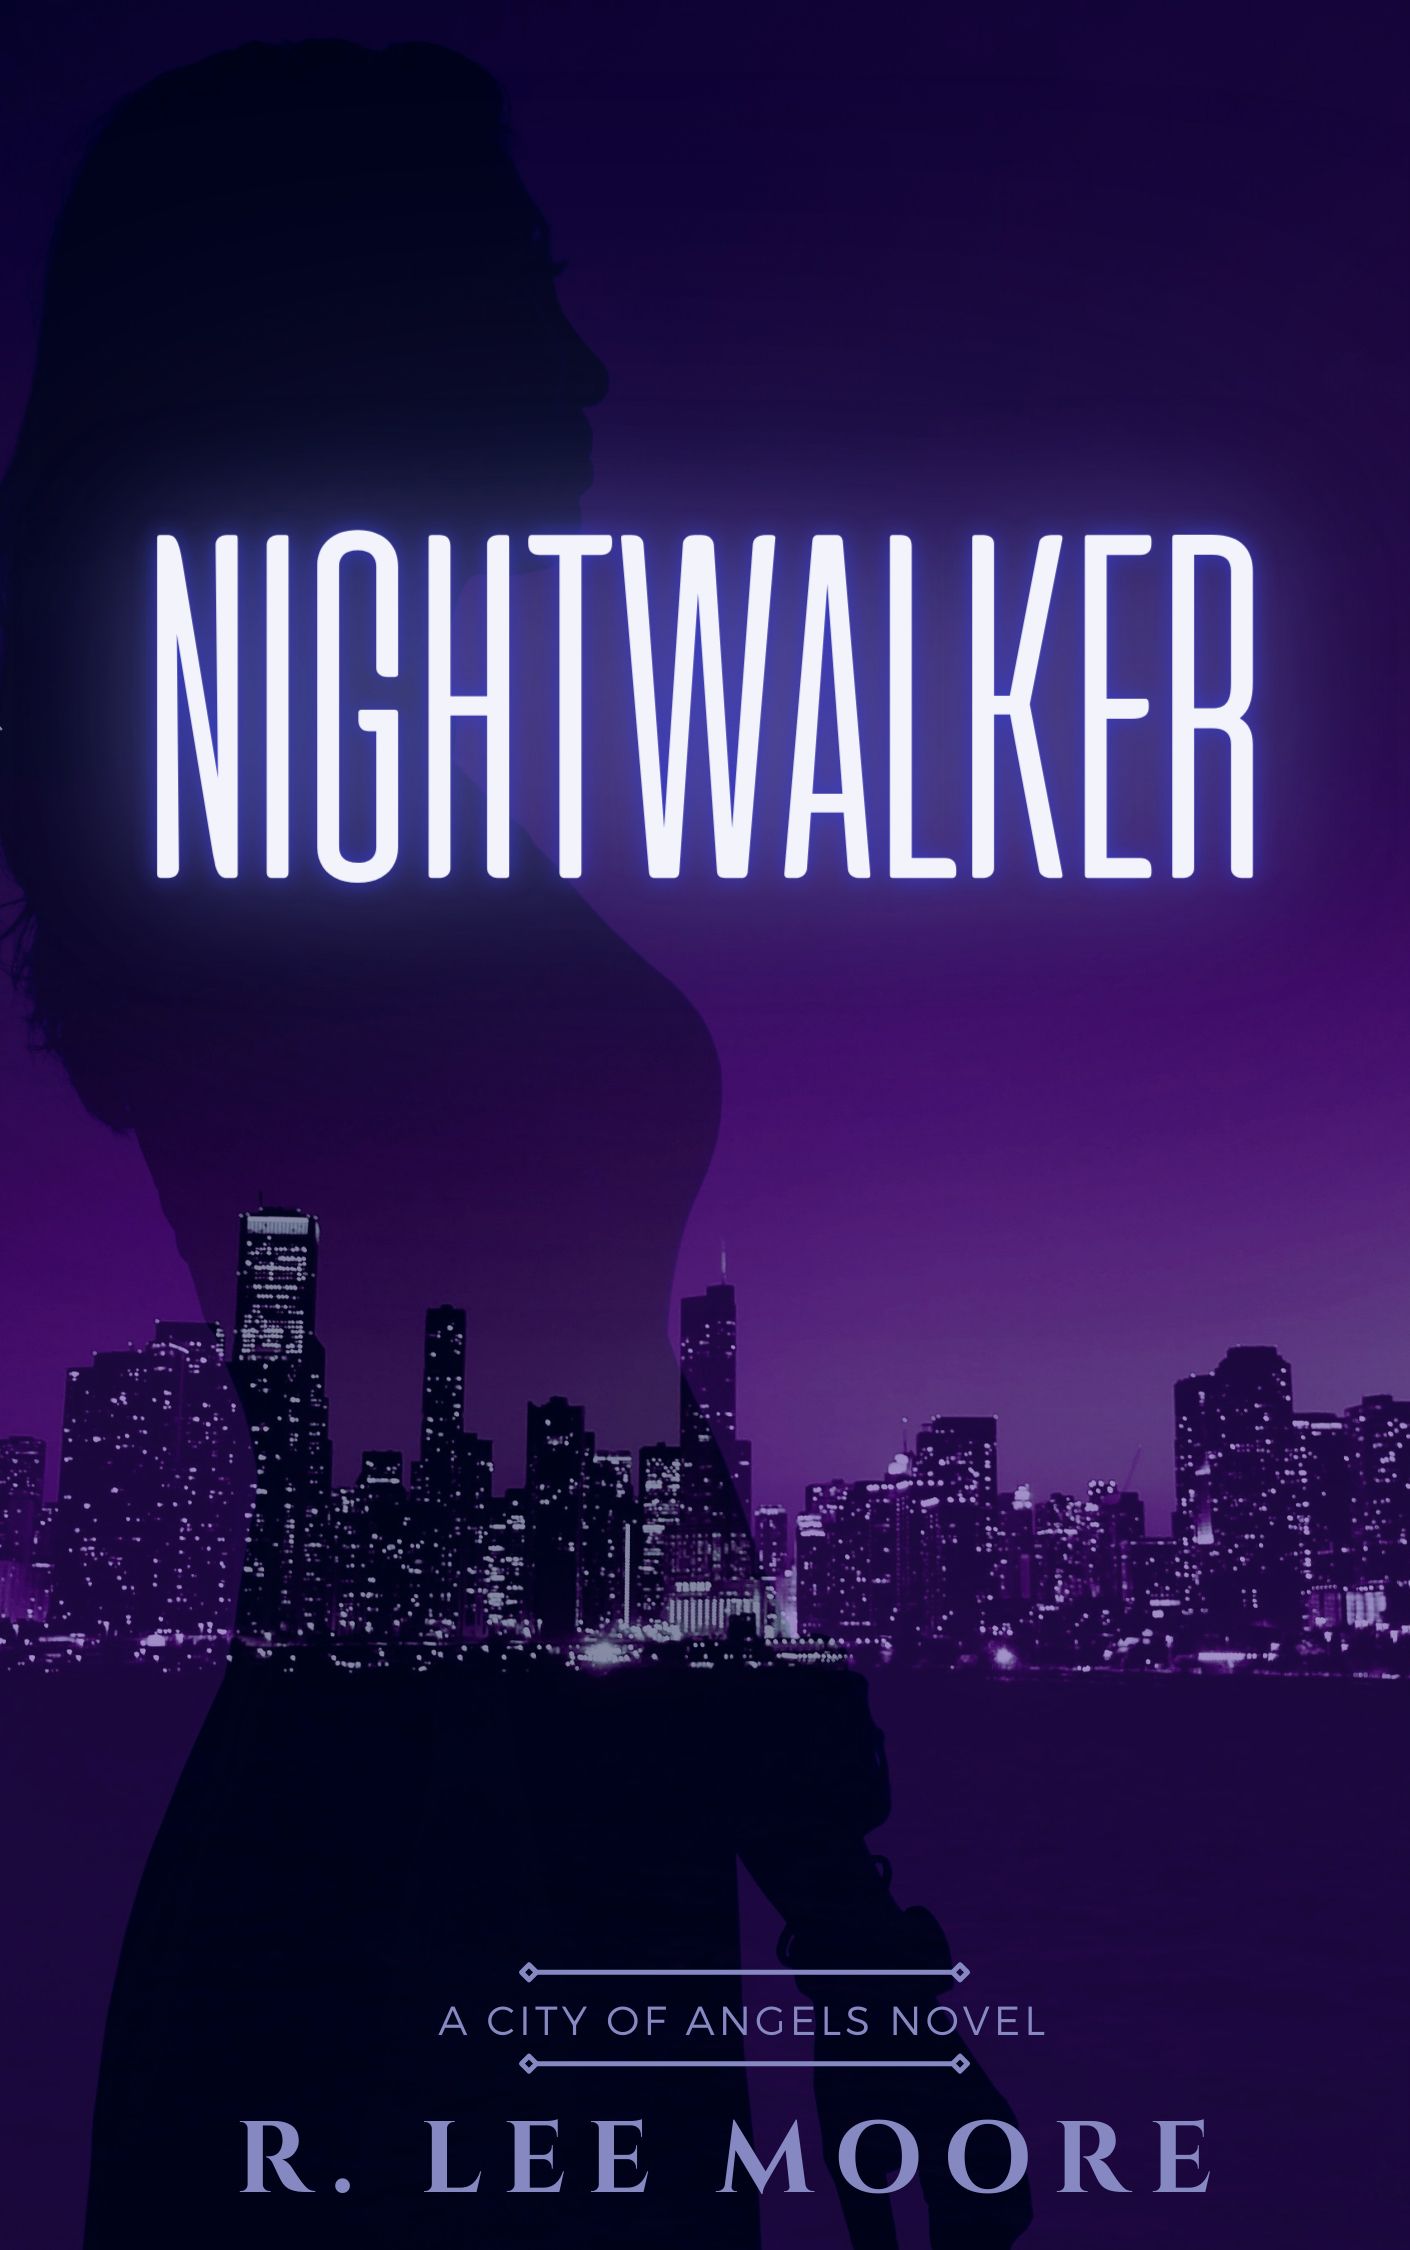 Nightwalker's Book Image